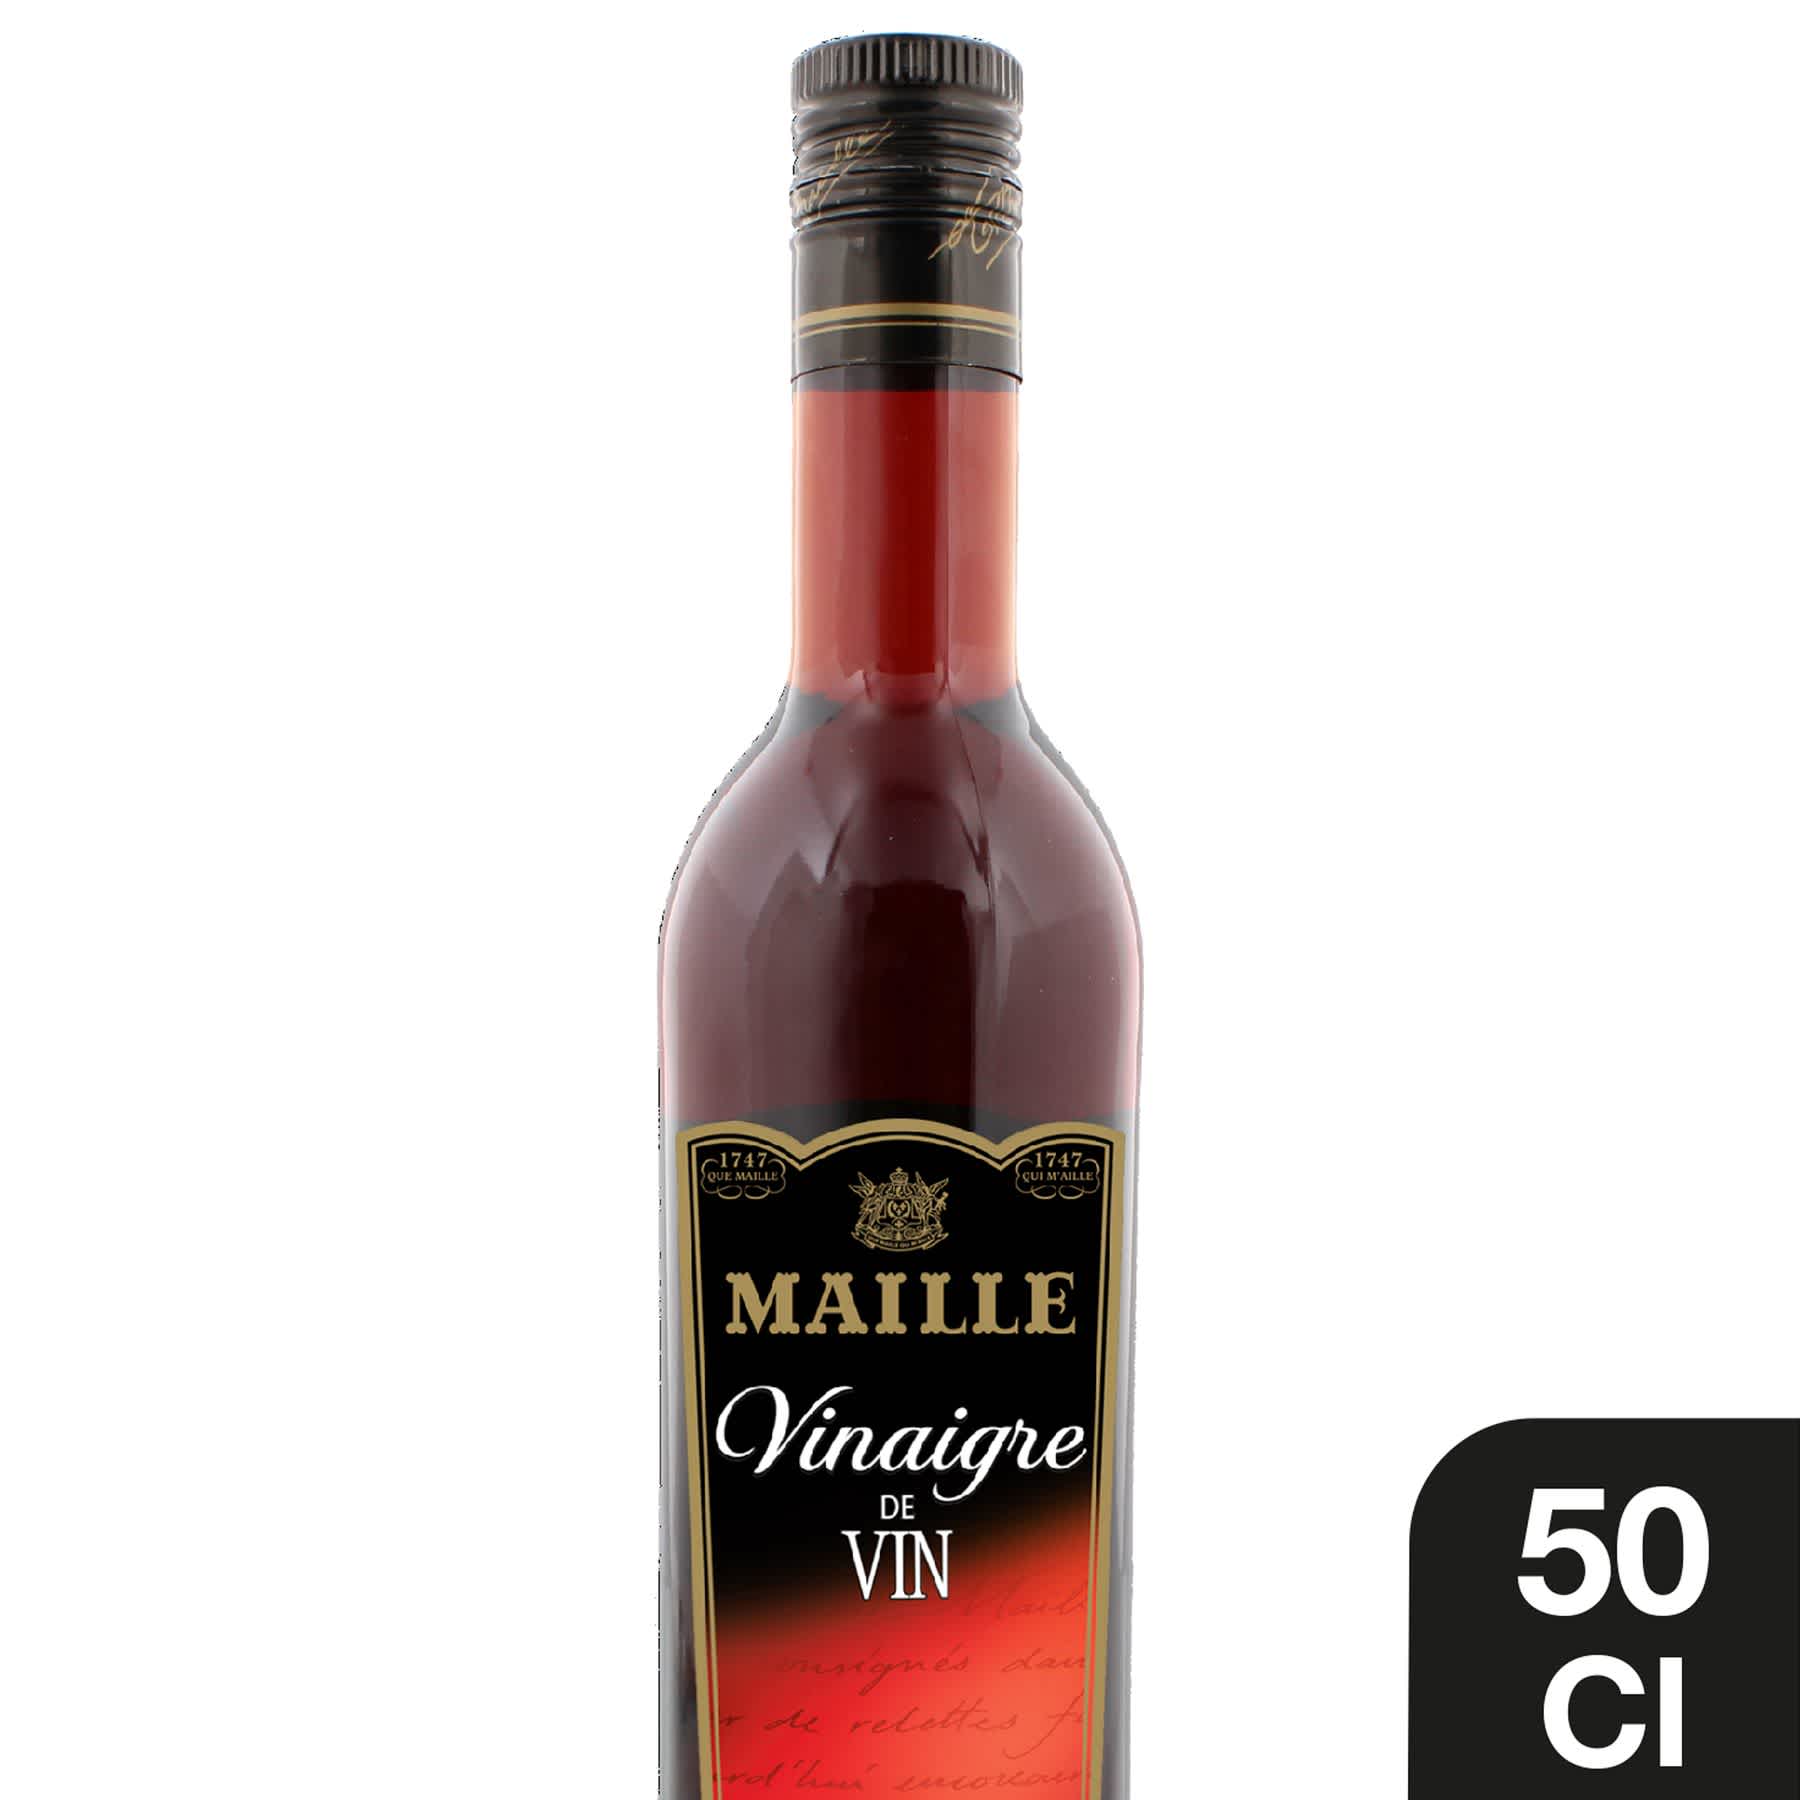 Maille - Vinaigre de Vin Rouge adouci au jus de raisin concentré 50 cl